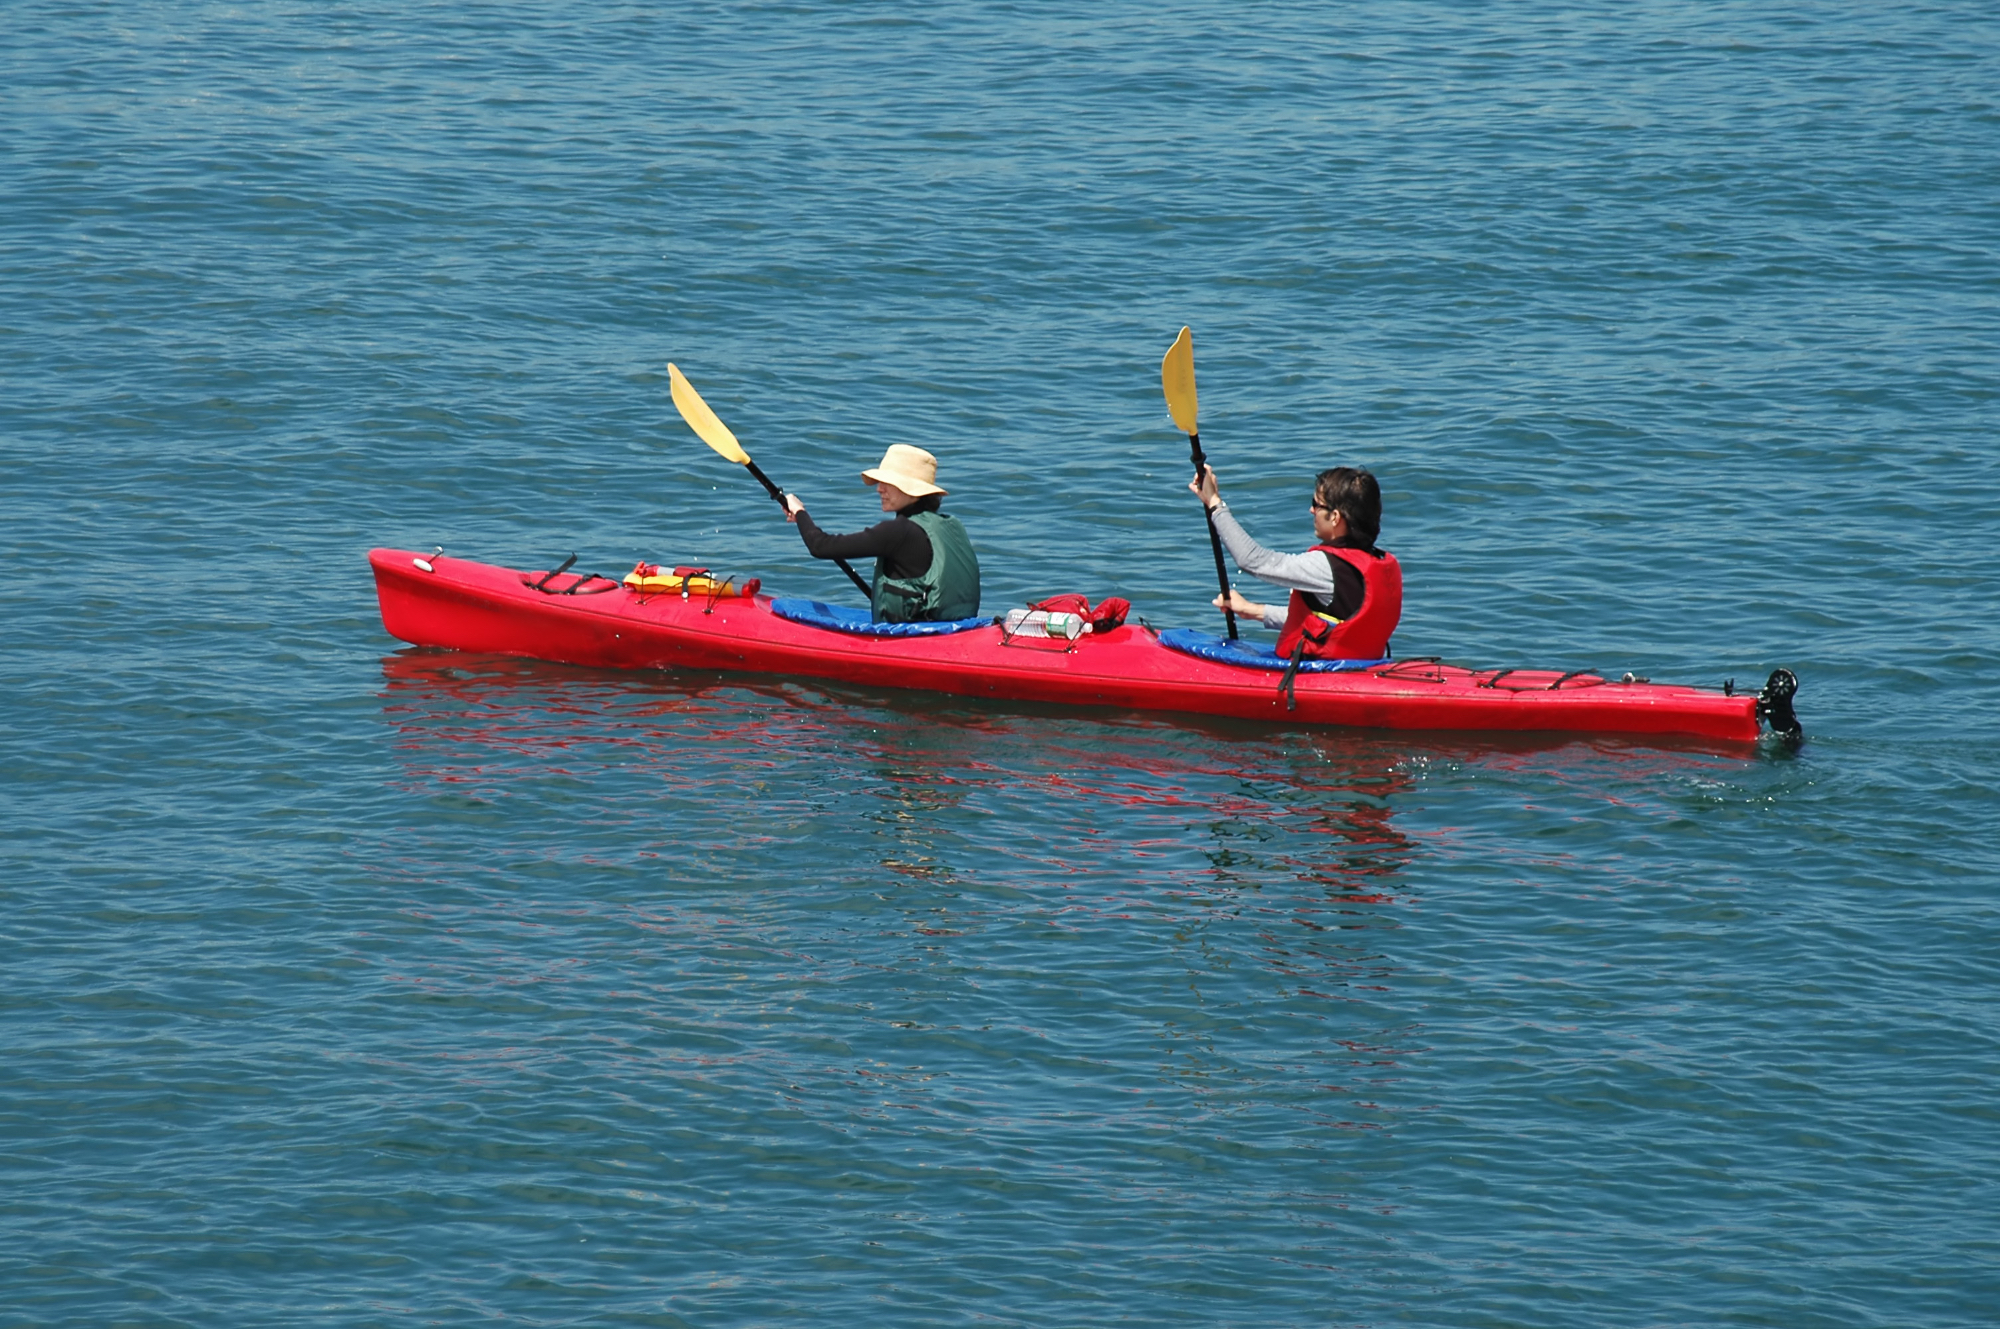 Pantaloni kayak sono la scelta ideale per navigare con libertà e agilità